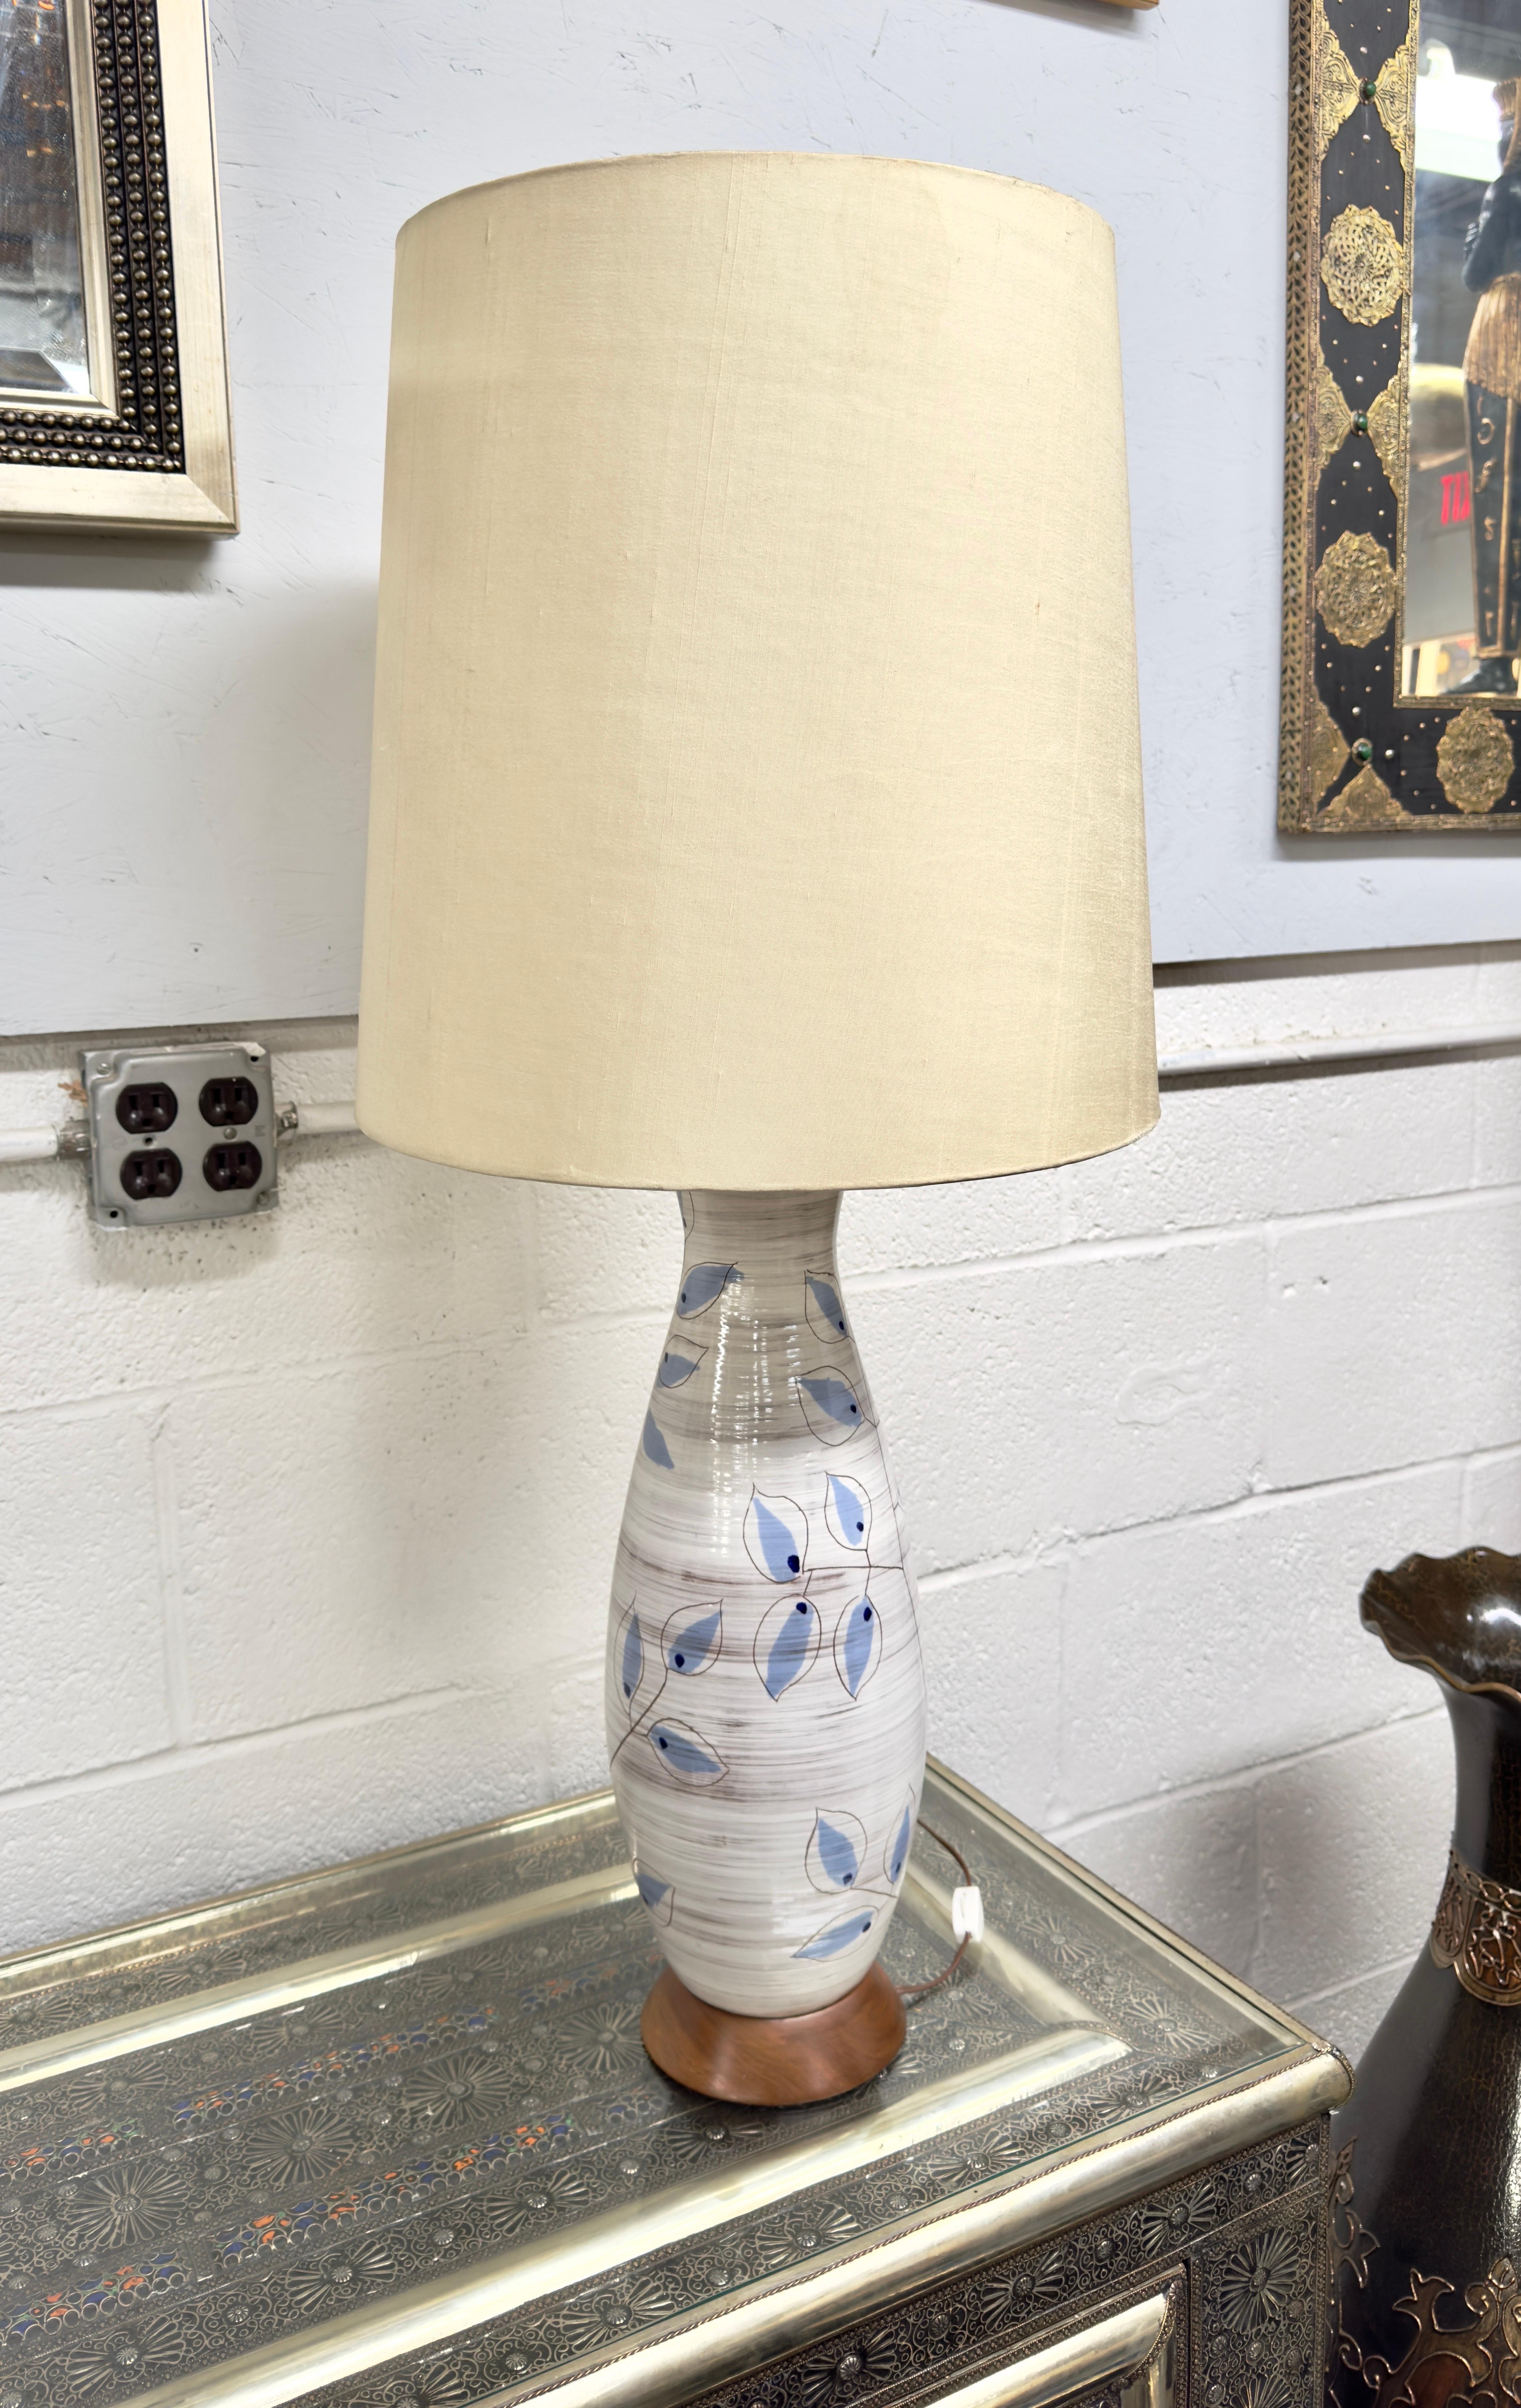 Eine handwerklich gefertigte Tischlampe von Bitossi aus Italien aus den 1950er Jahren. 
Die in sorgfältiger Handarbeit hergestellte Lampe mit botanischem Design besteht aus einer zarten Keramikkonstruktion. Die Lampe ist mit Blättern gestaltet, die